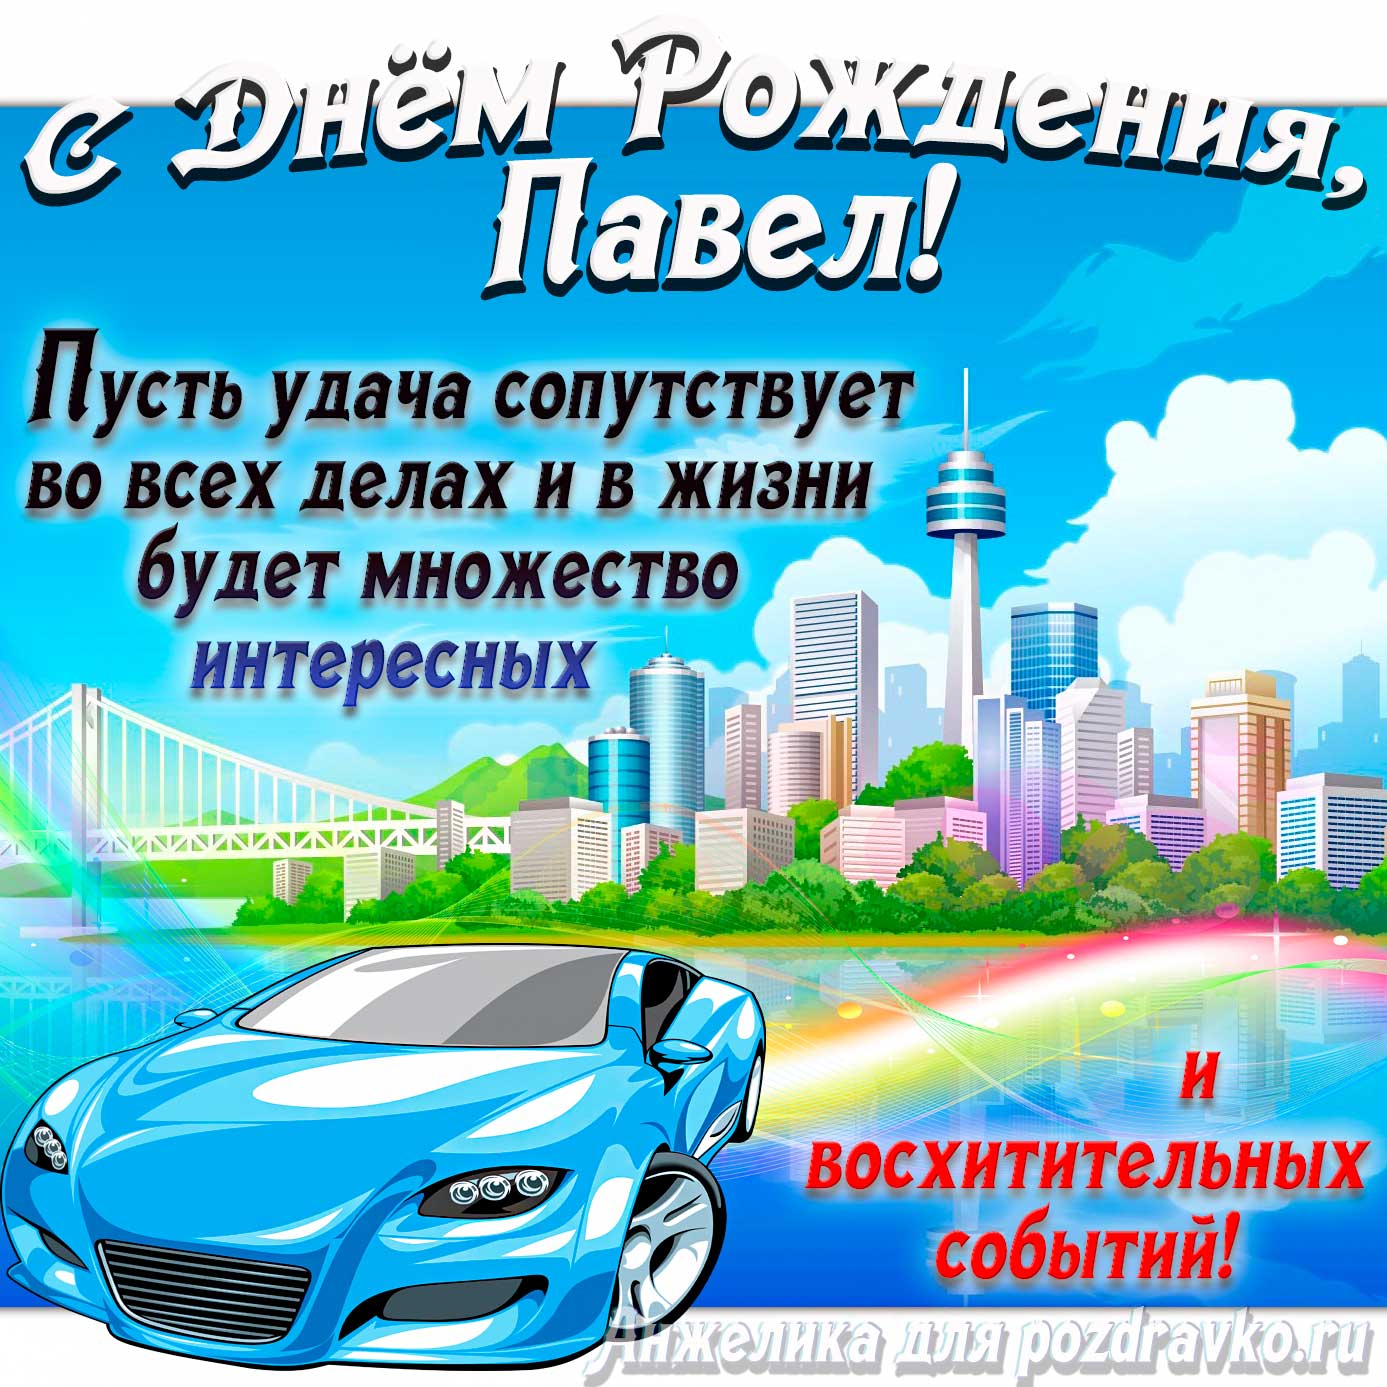 Открытка - с Днём Рождения Паша с голубой машиной и пожеланием. Скачать бесплатно или отправить картинку.